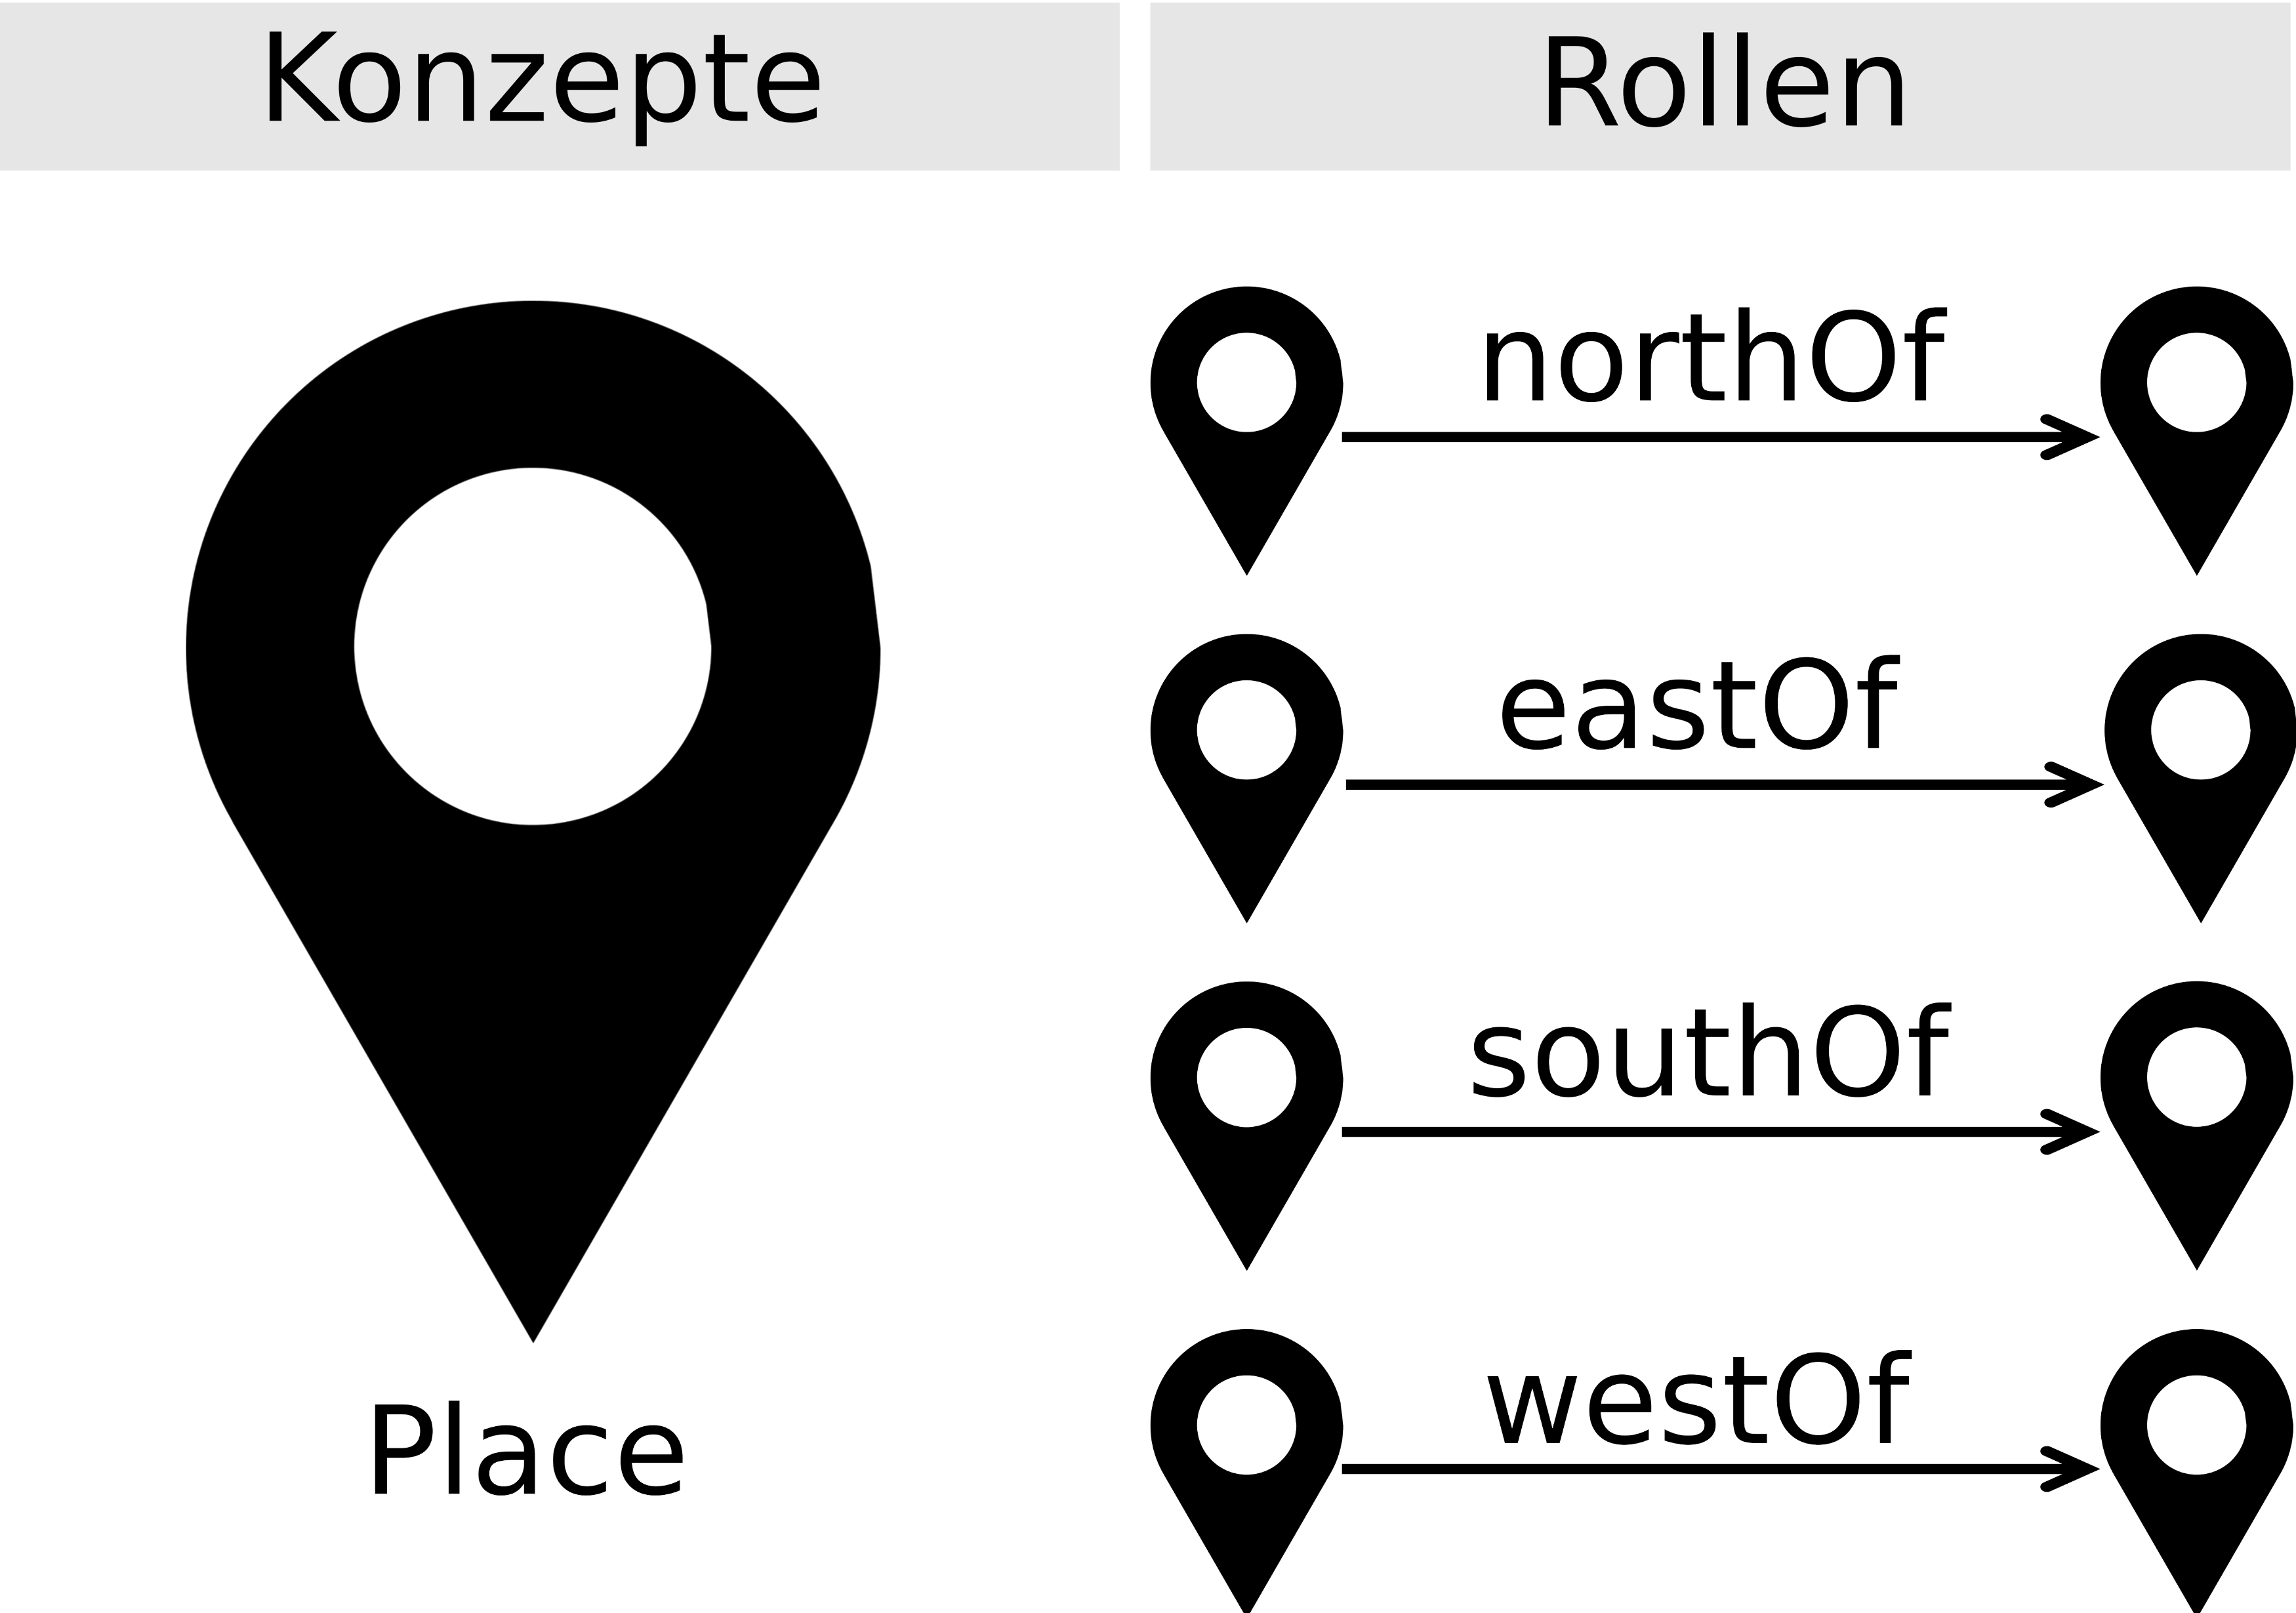 Abb. 2: Das Konzept Place und die Rolen
                           northOf, eastOf, southOf, westOf. [Eigene Darstellung, CC BY 4.0].